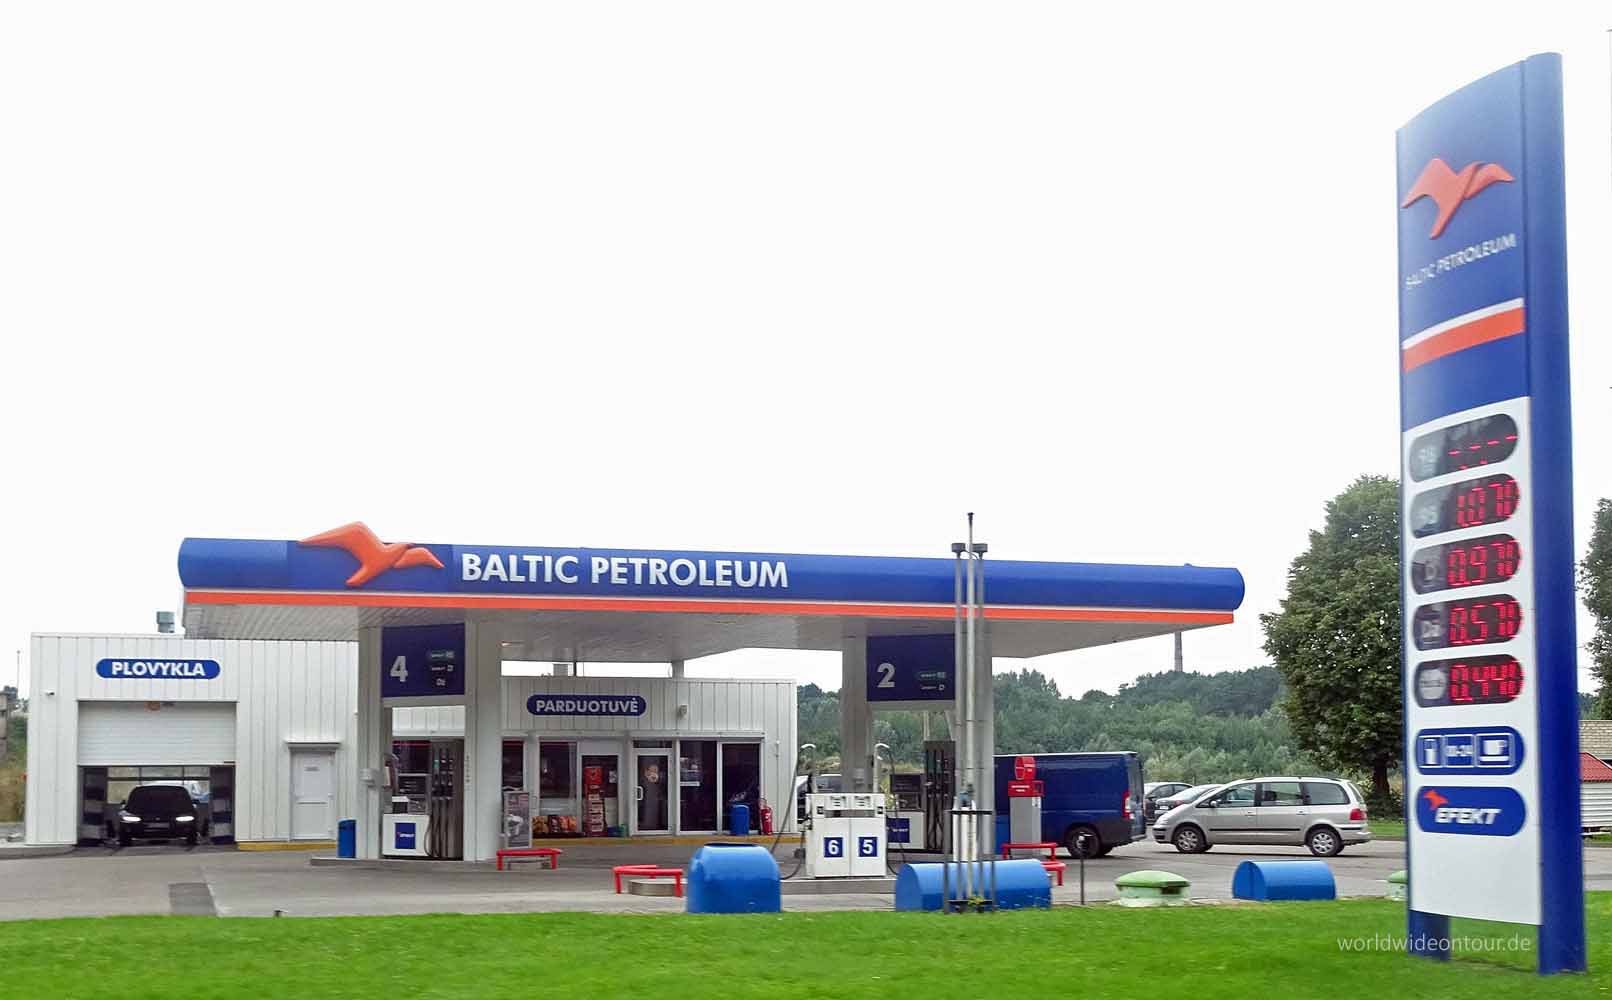 Nur eine Tanke, aber der Name: Baltic Petroleum.